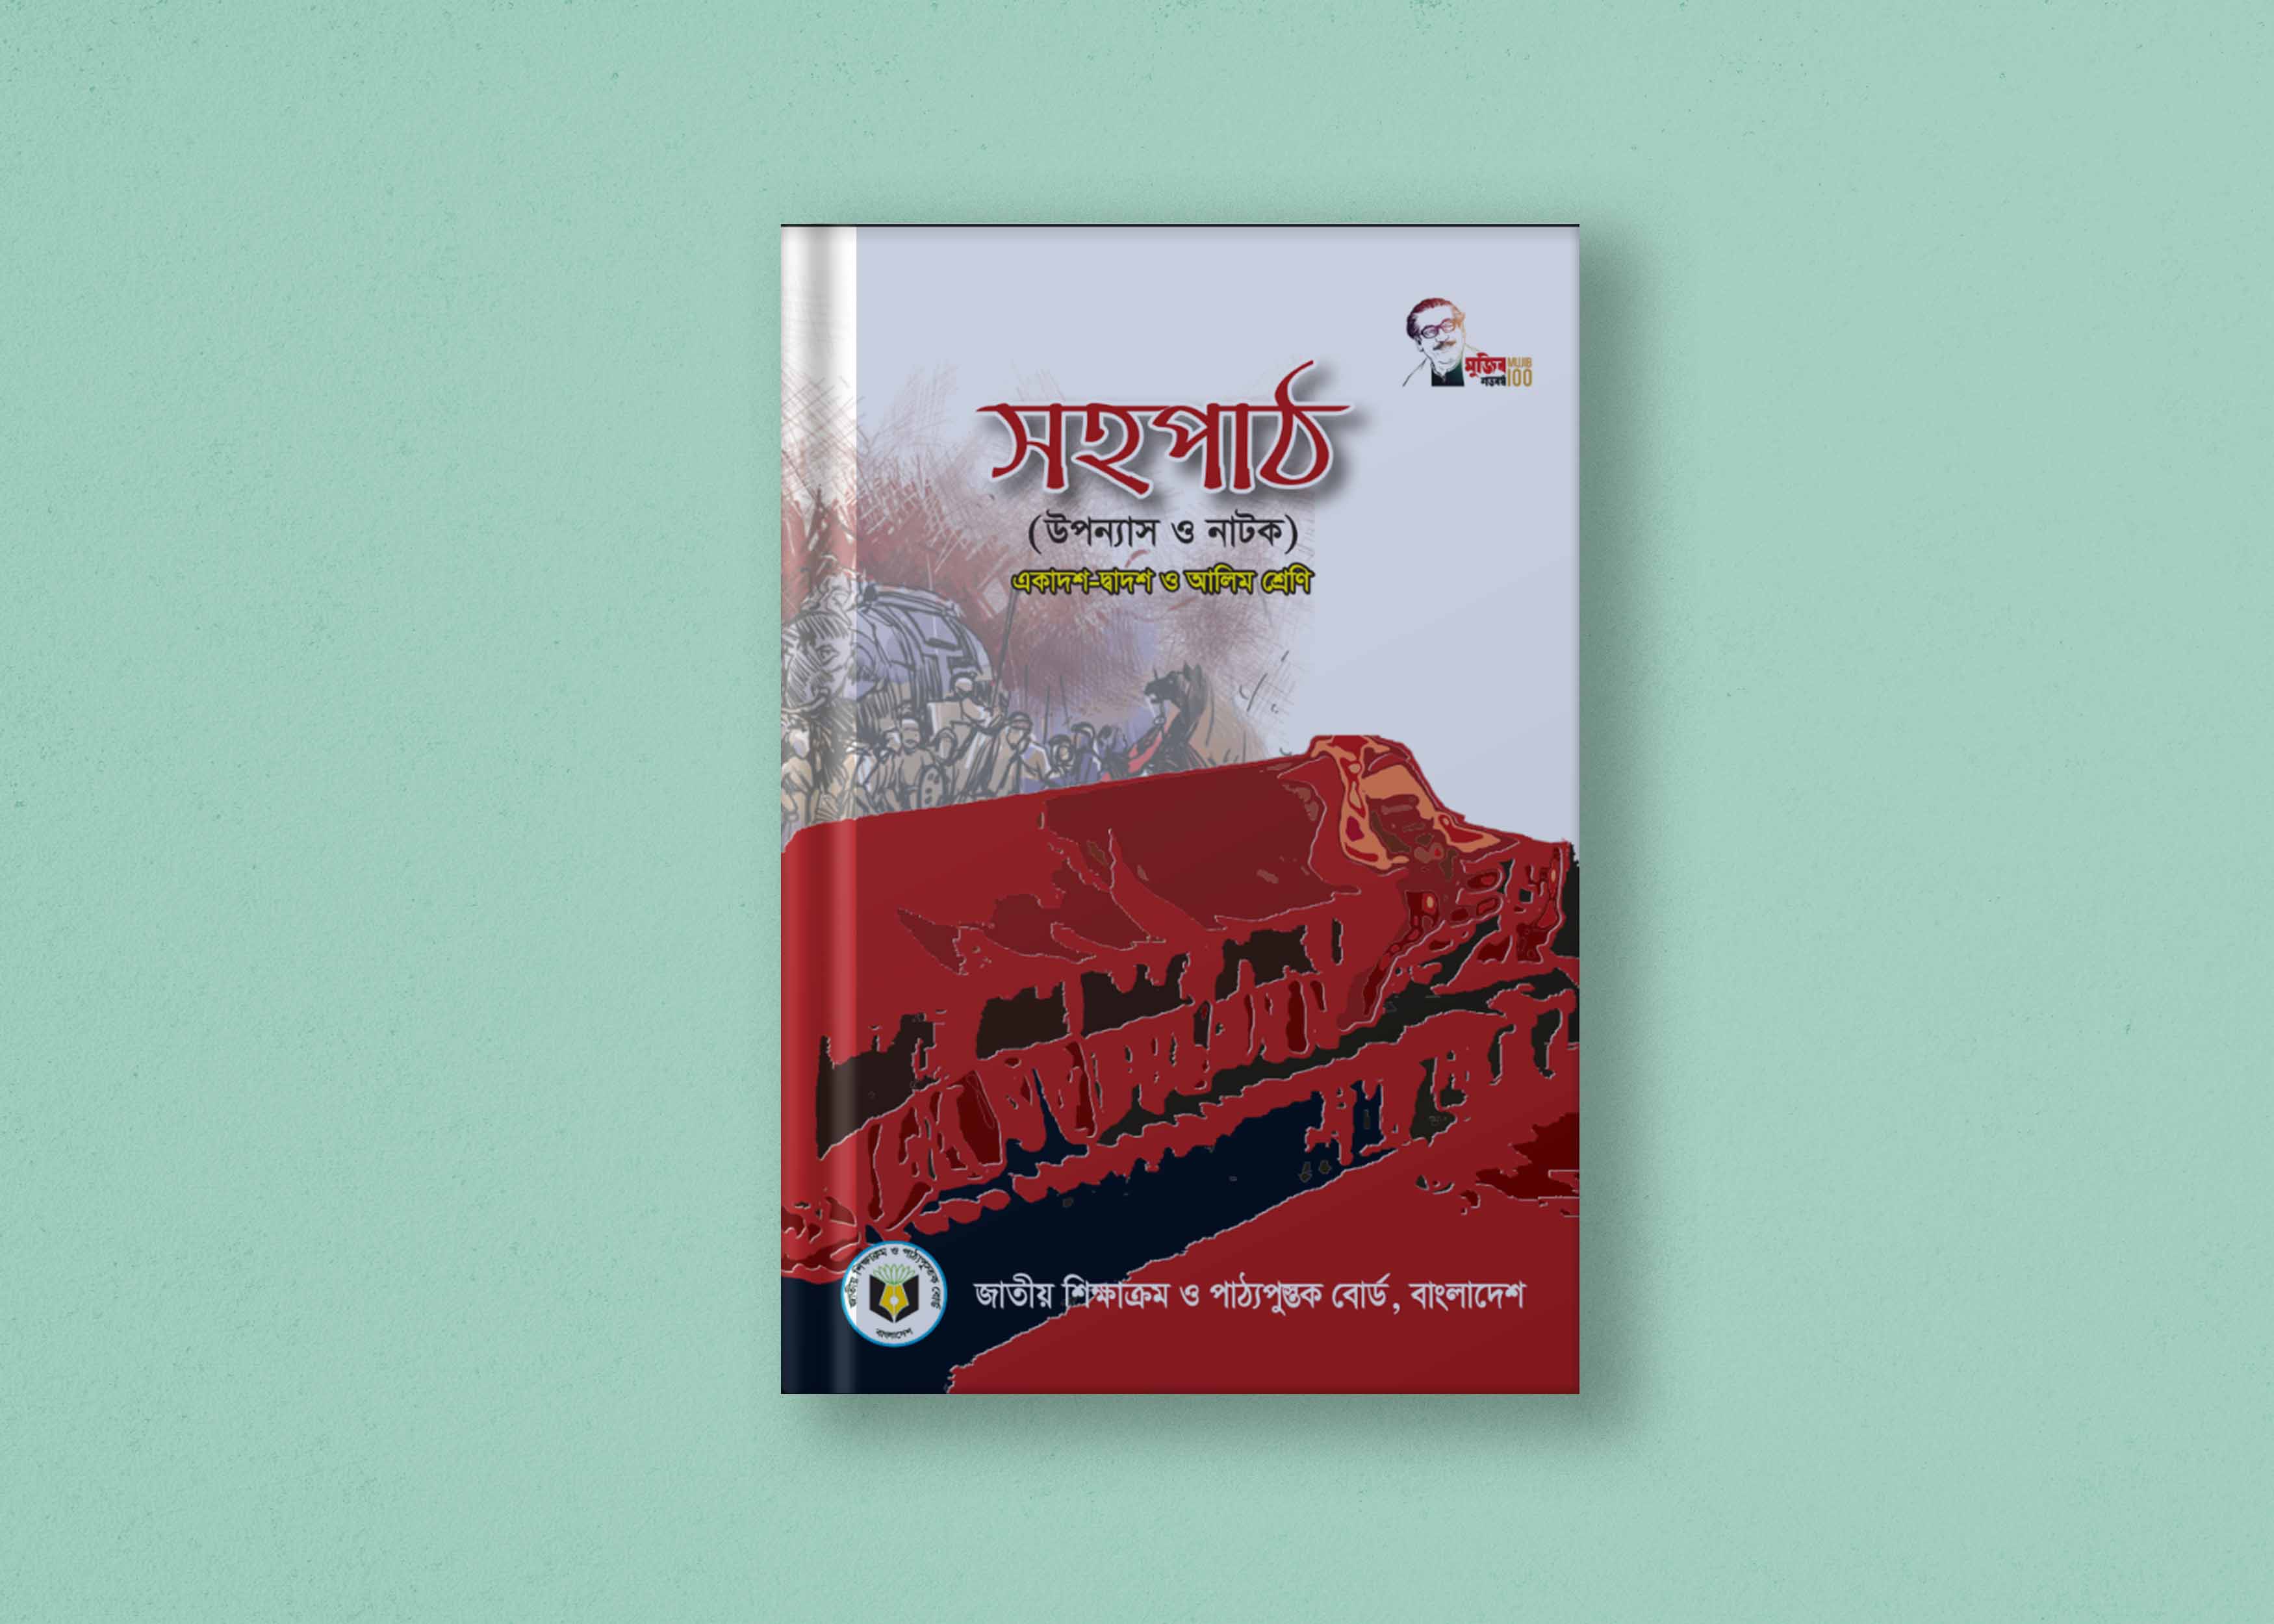 বাংলা সহপাঠ (উপন্যাস ও নাটক) | একাদশ-দ্বাদশ, এইচএসসি ও আলিম শ্রেণির বই | Bangla Sohopath : Novel and Drama | Class XI-XII, HSC and Alim Class Book PDF